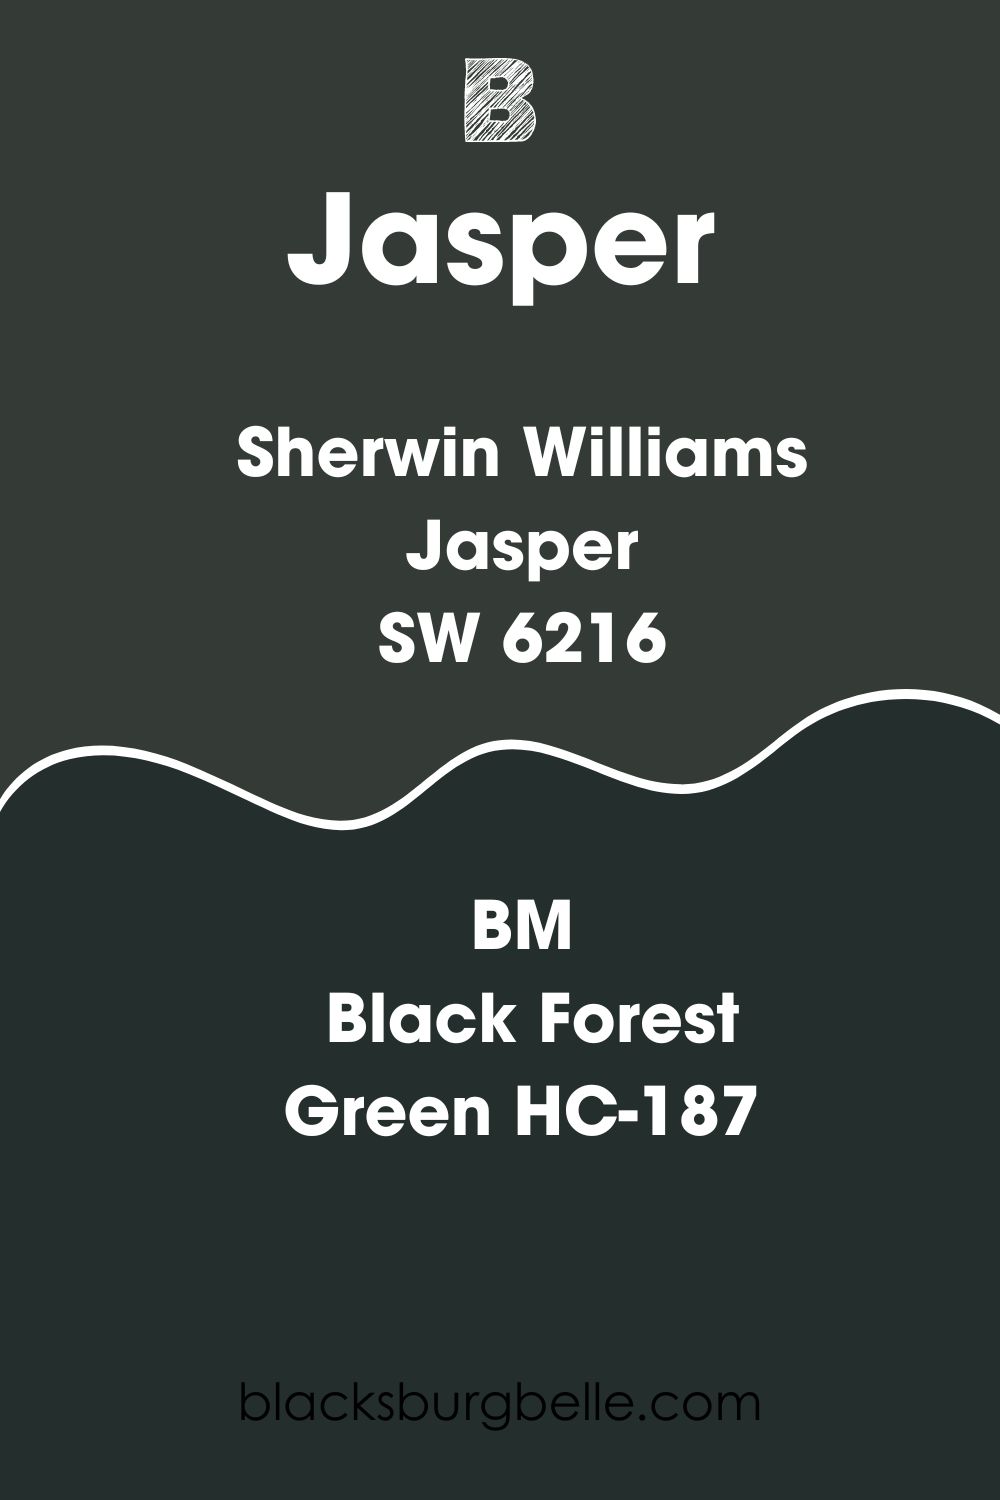 Sherwin Williams Jasper Benjamin Moore Version